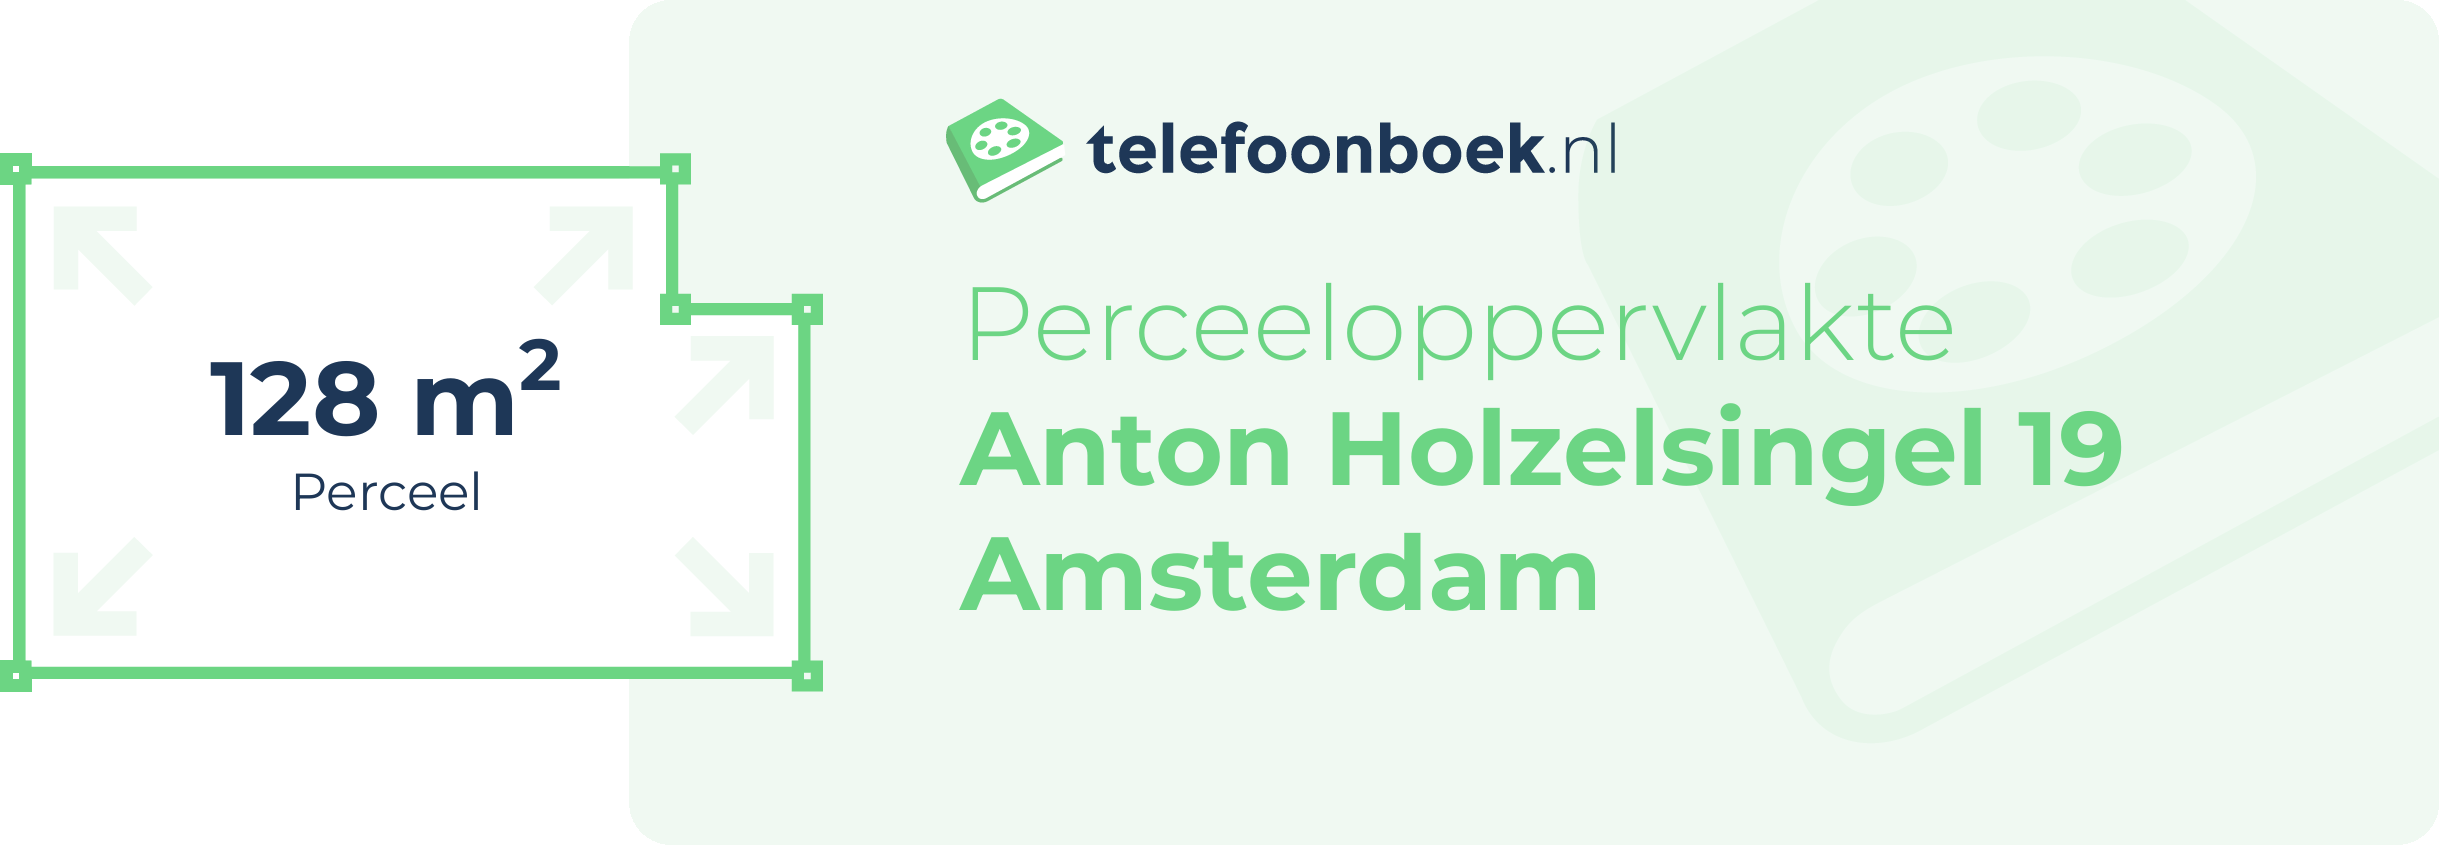 Perceeloppervlakte Anton Holzelsingel 19 Amsterdam